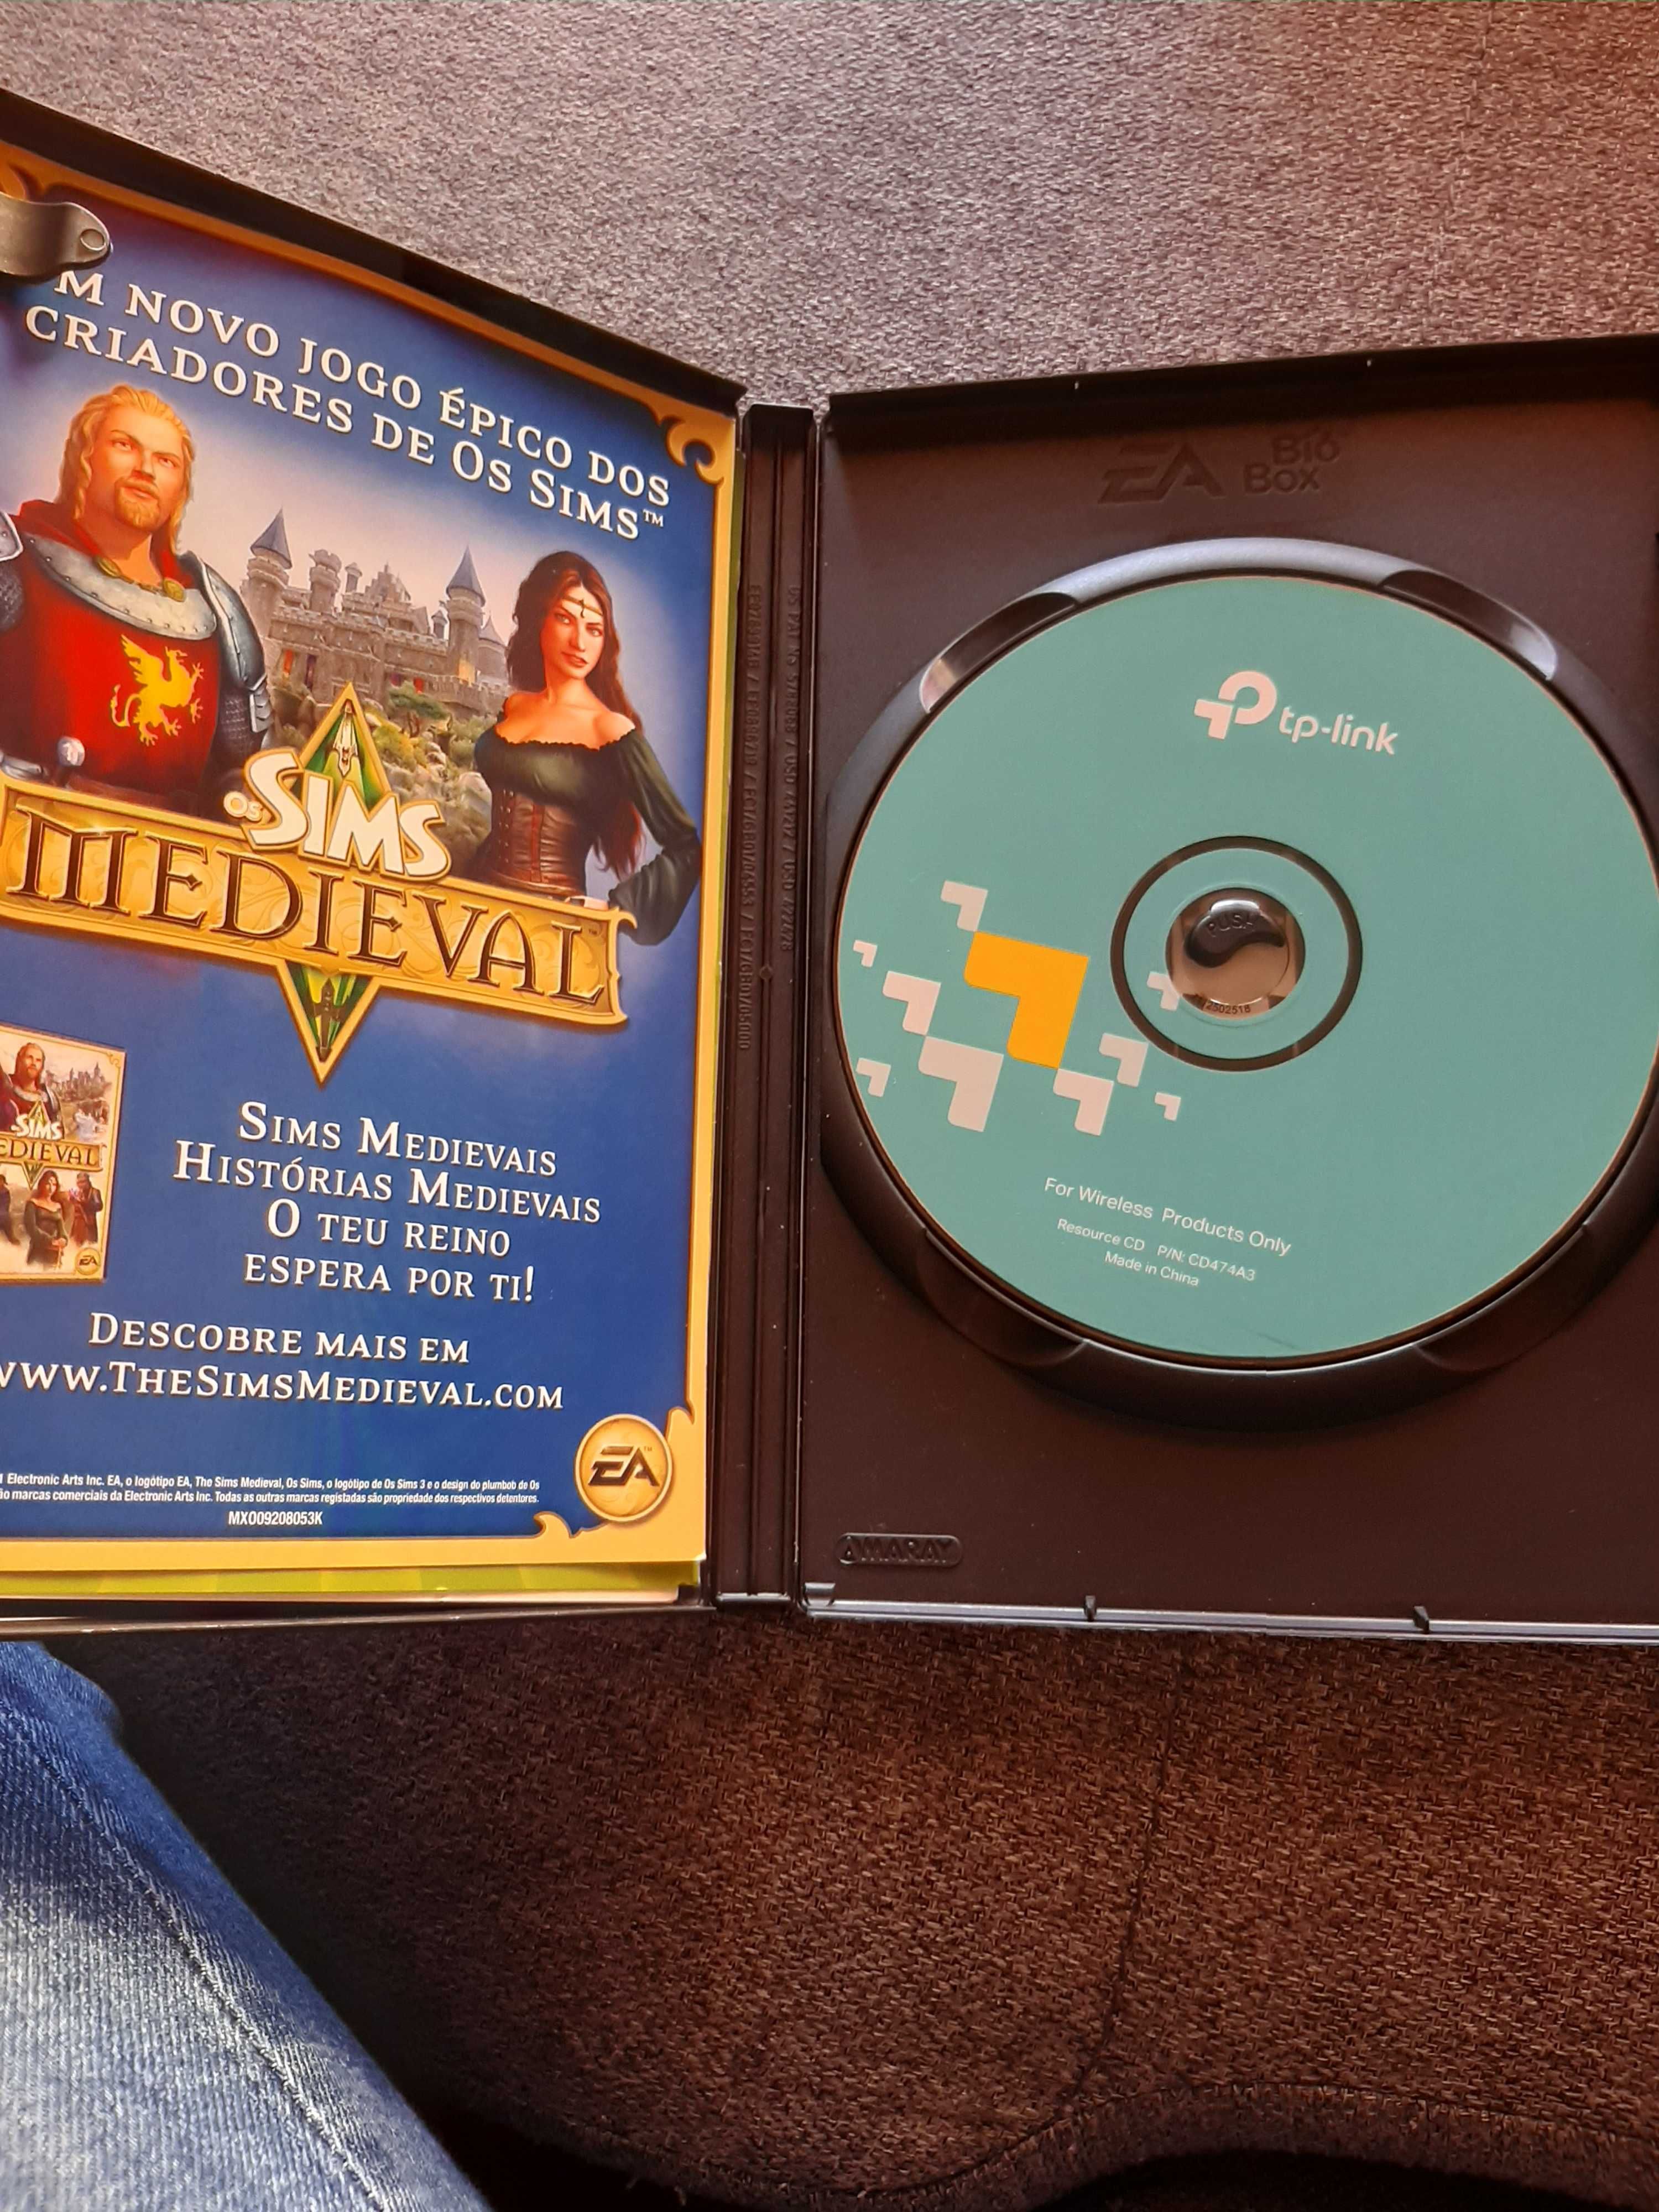 Jogo PC  Sims 3 gerações 8€